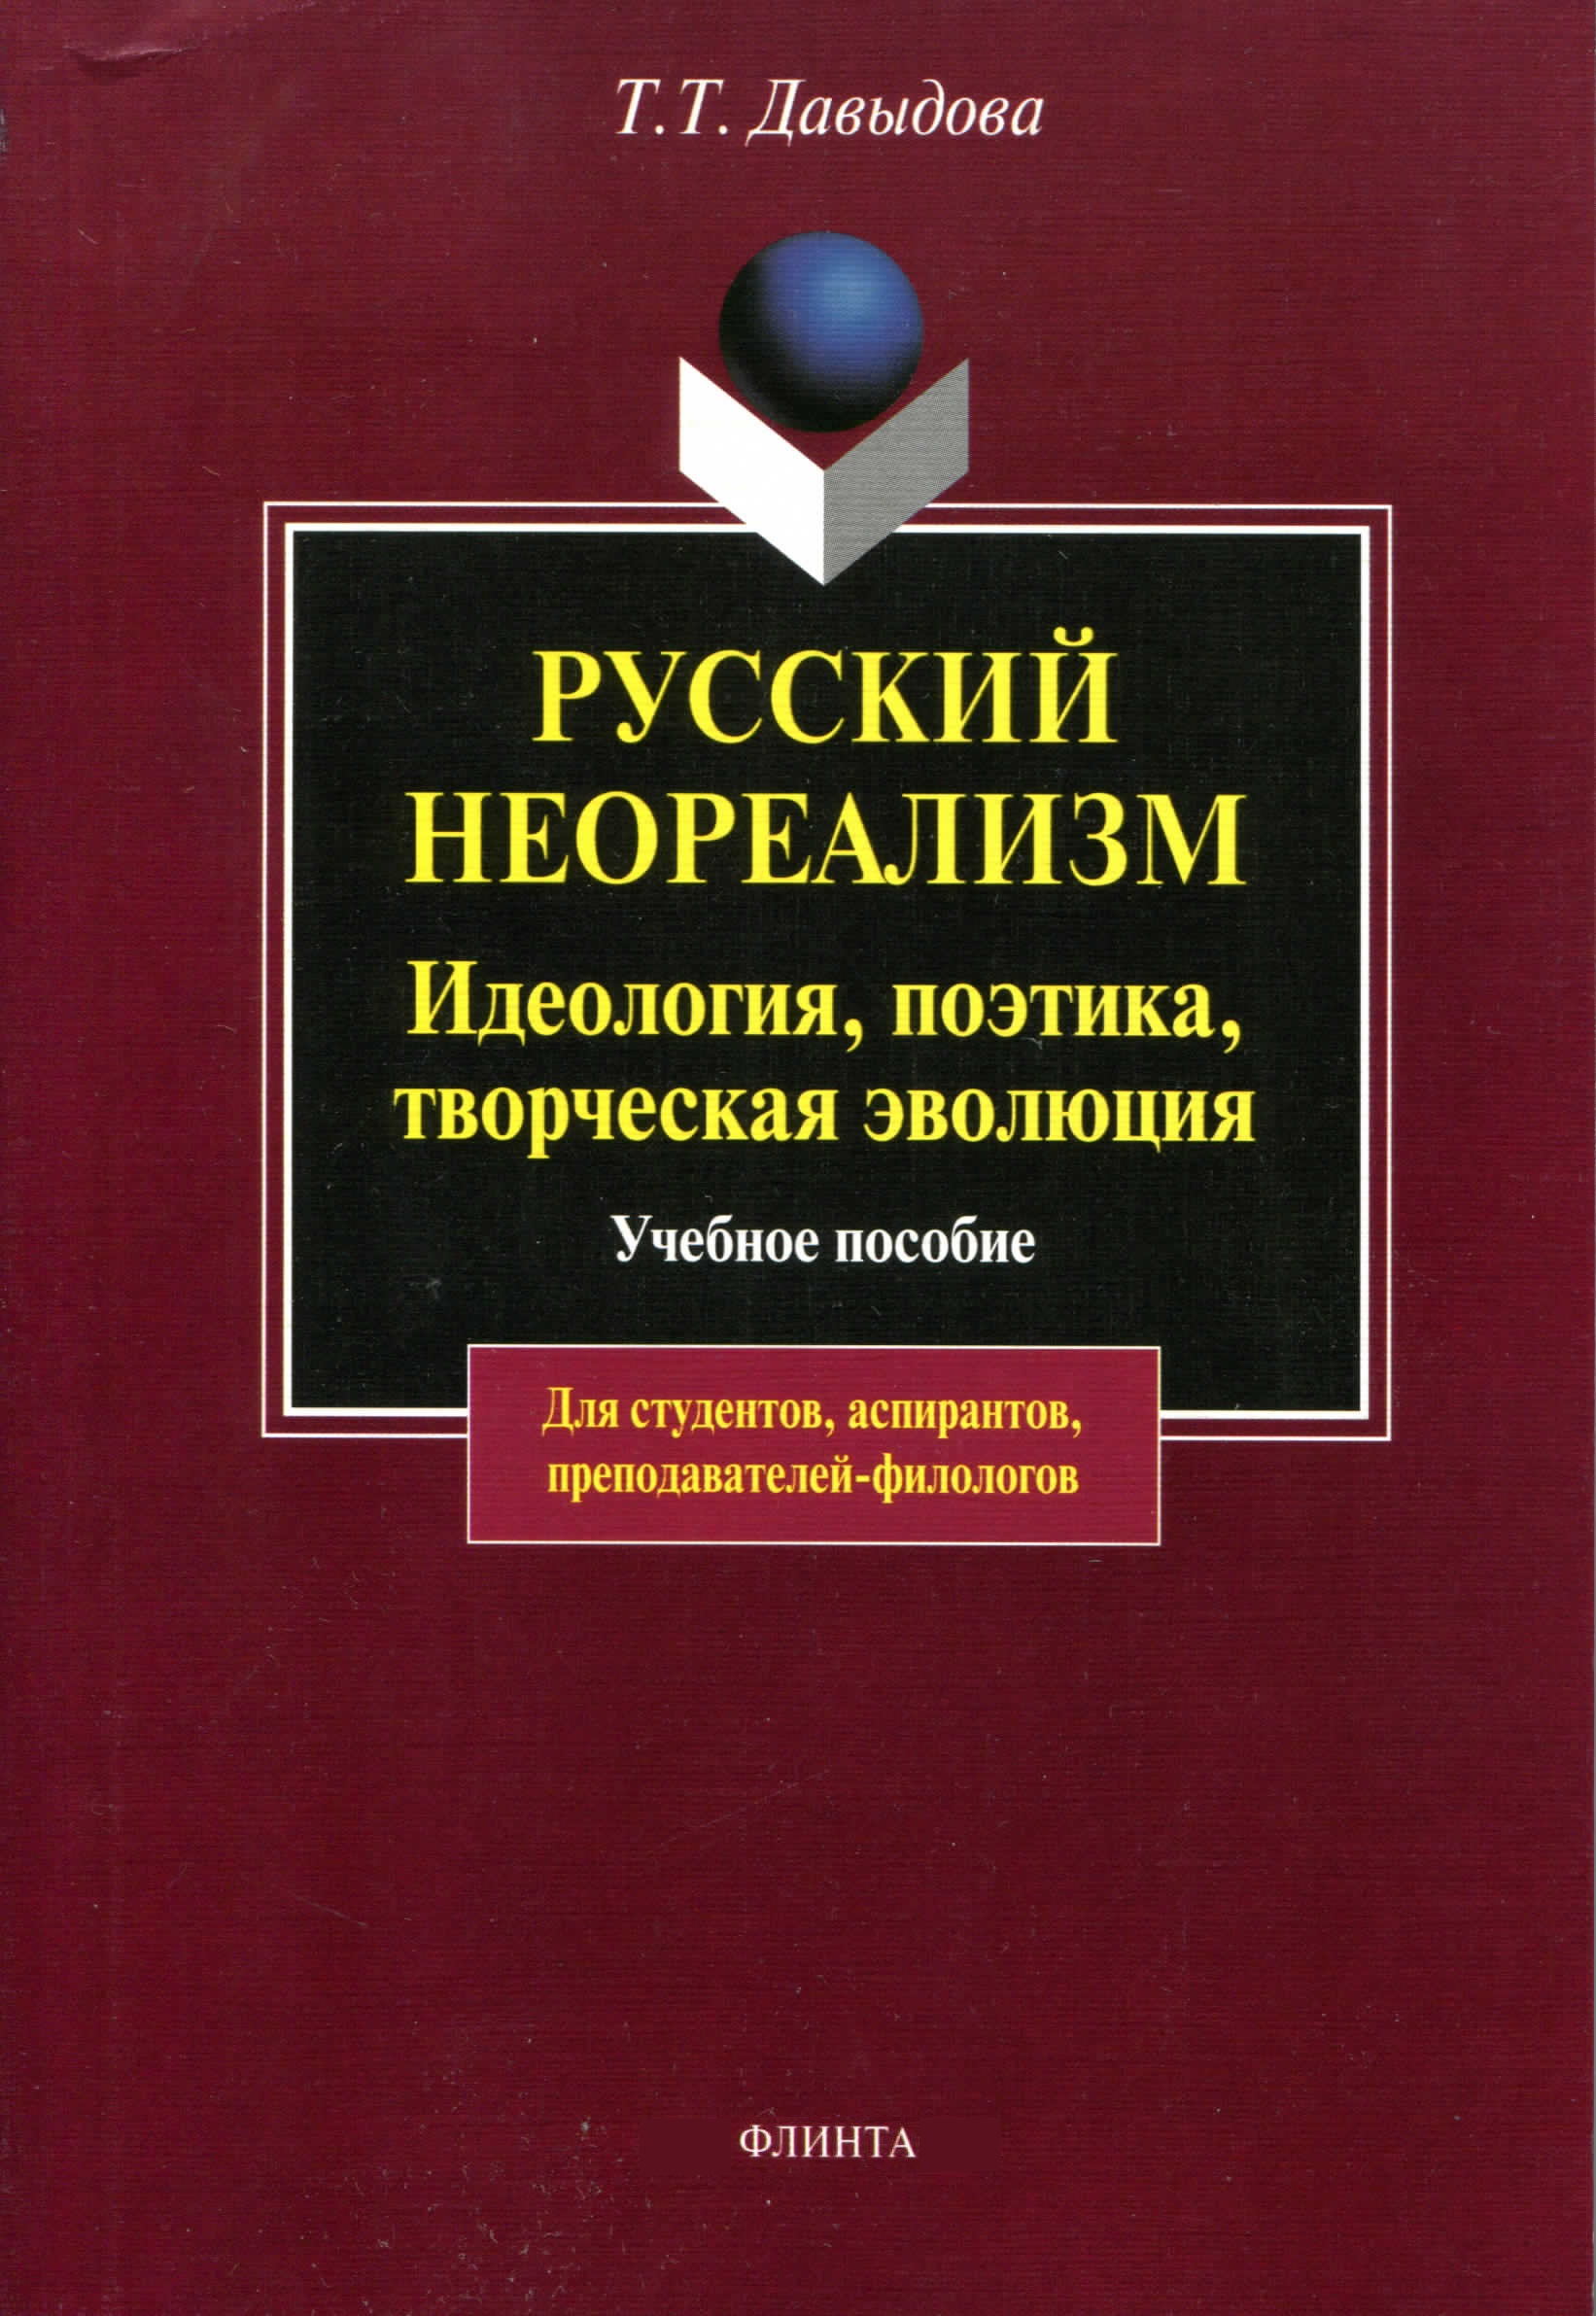 Русский неореализм. Идеология, поэтика, творческая эволюция. Учебное пособие